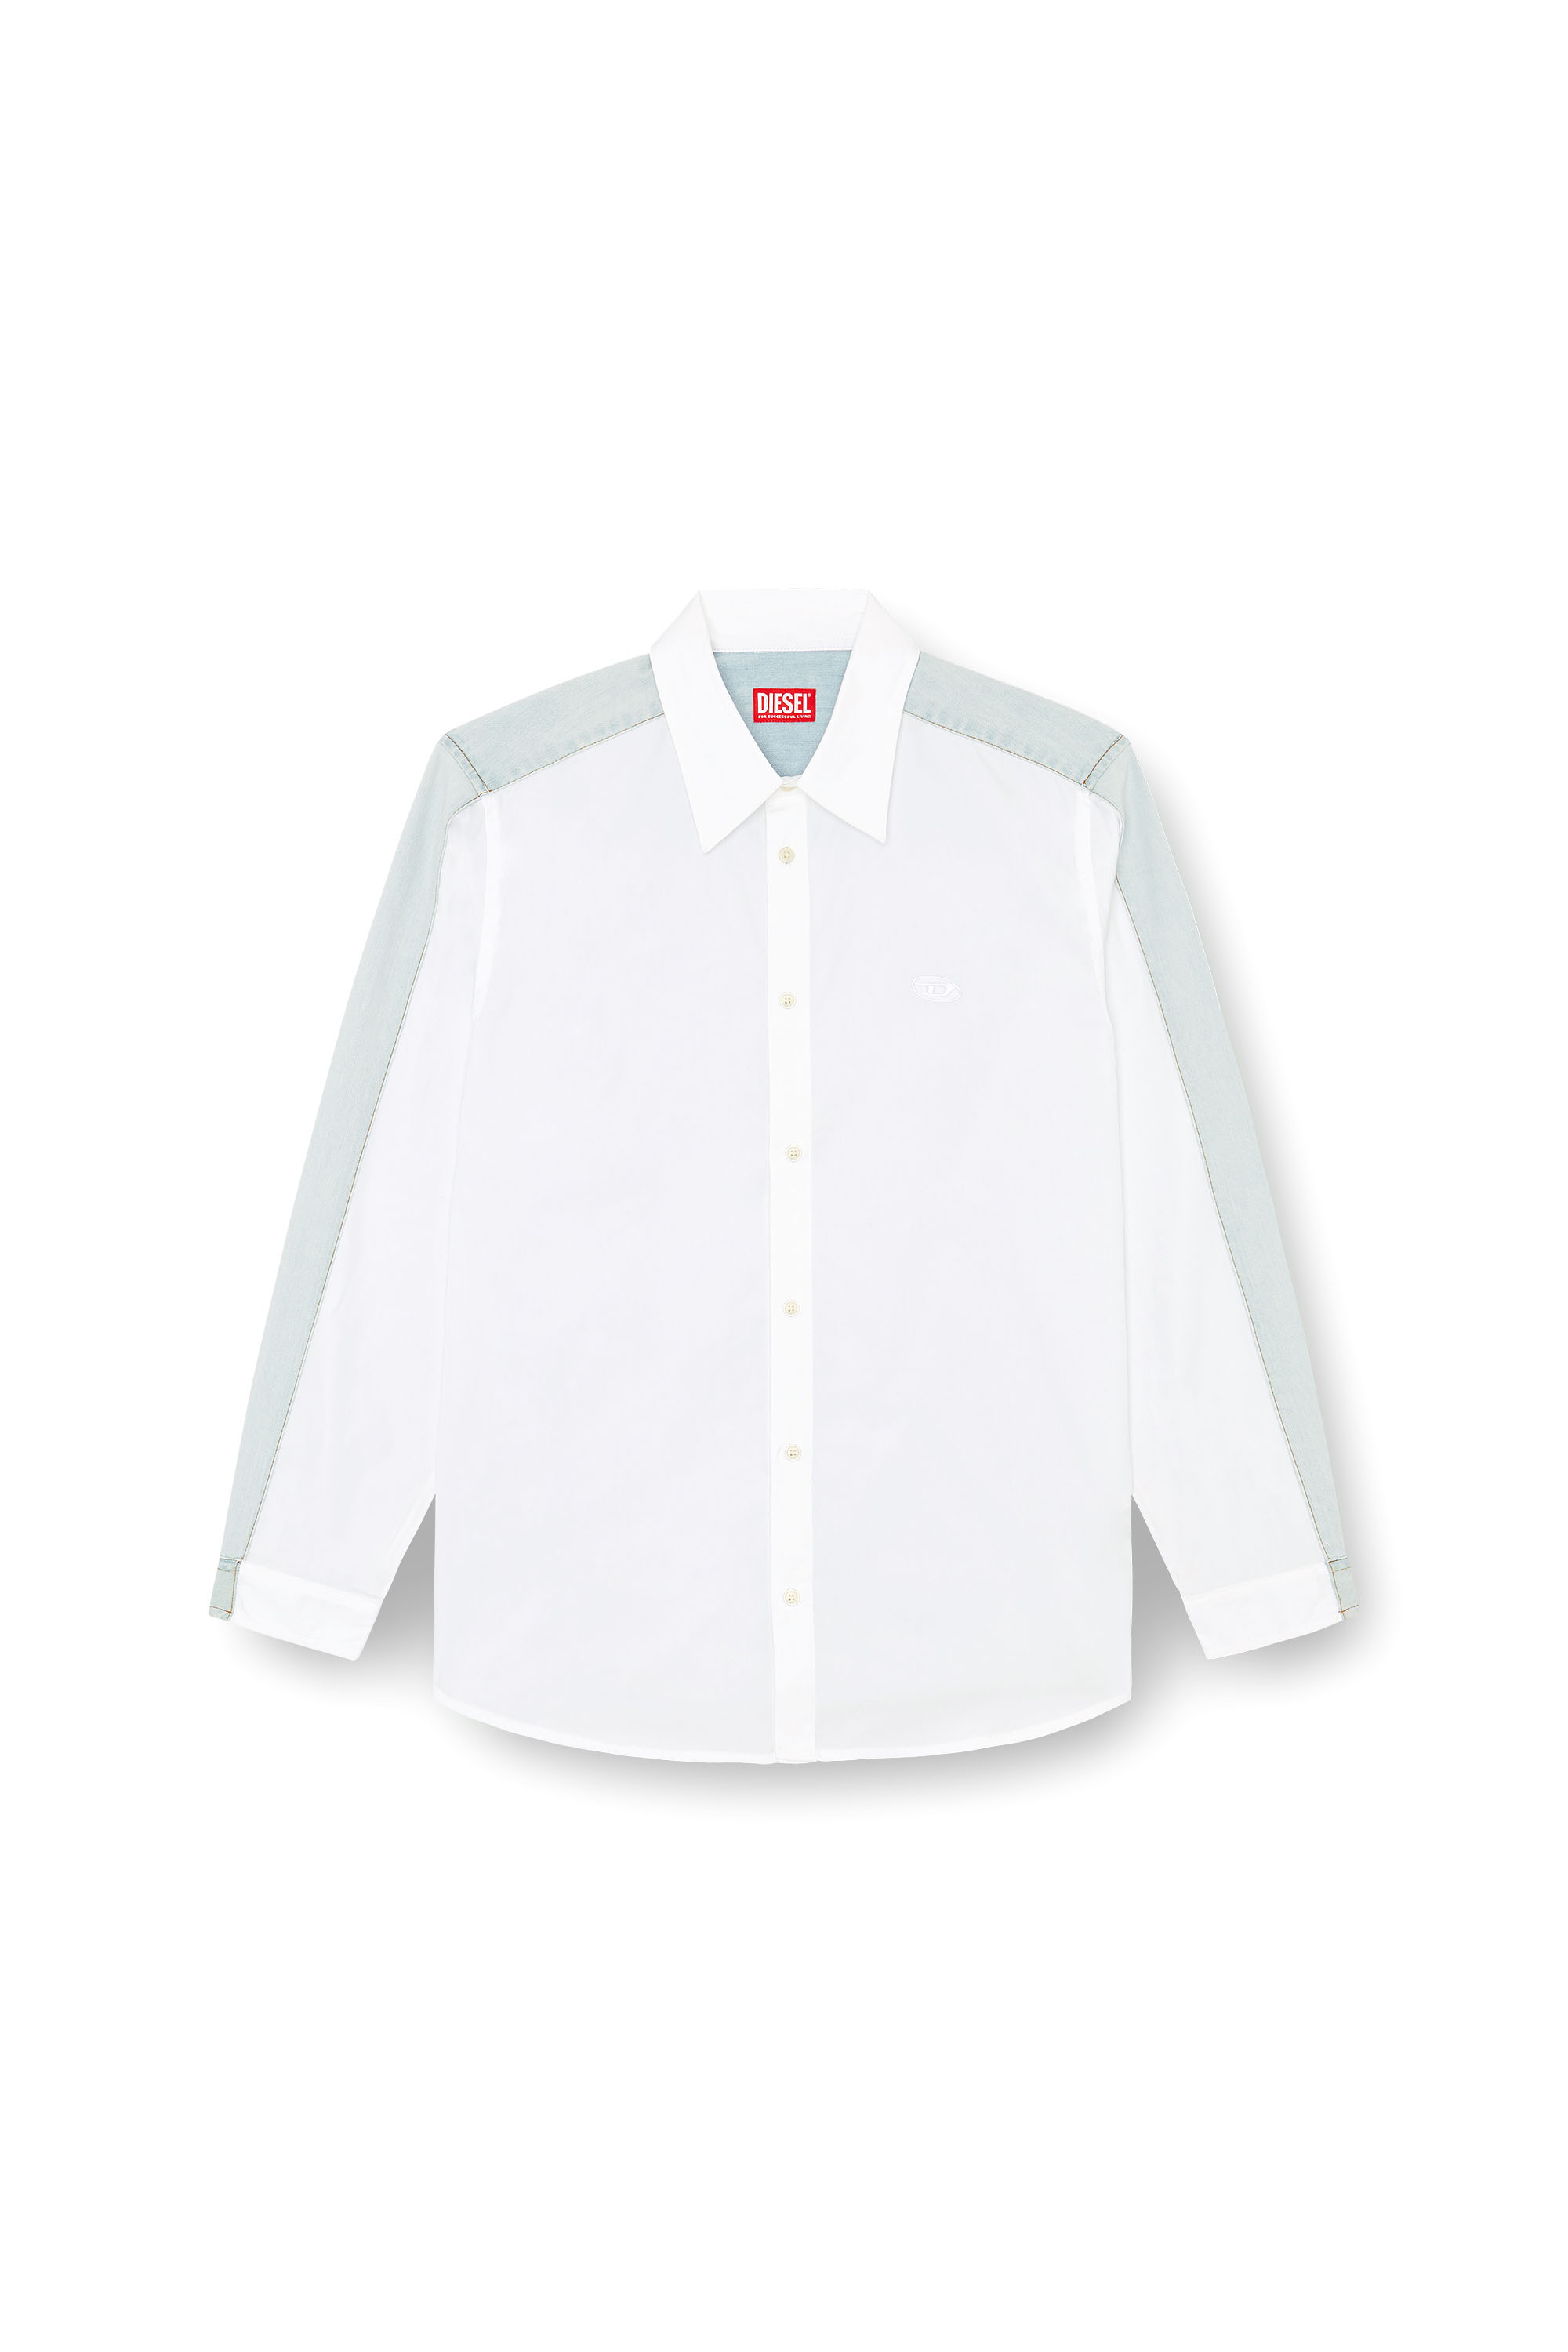 Diesel - S-SIMPLY-DNM, Hombre Camisa de popelín de algodón y denim in Multicolor - Image 3